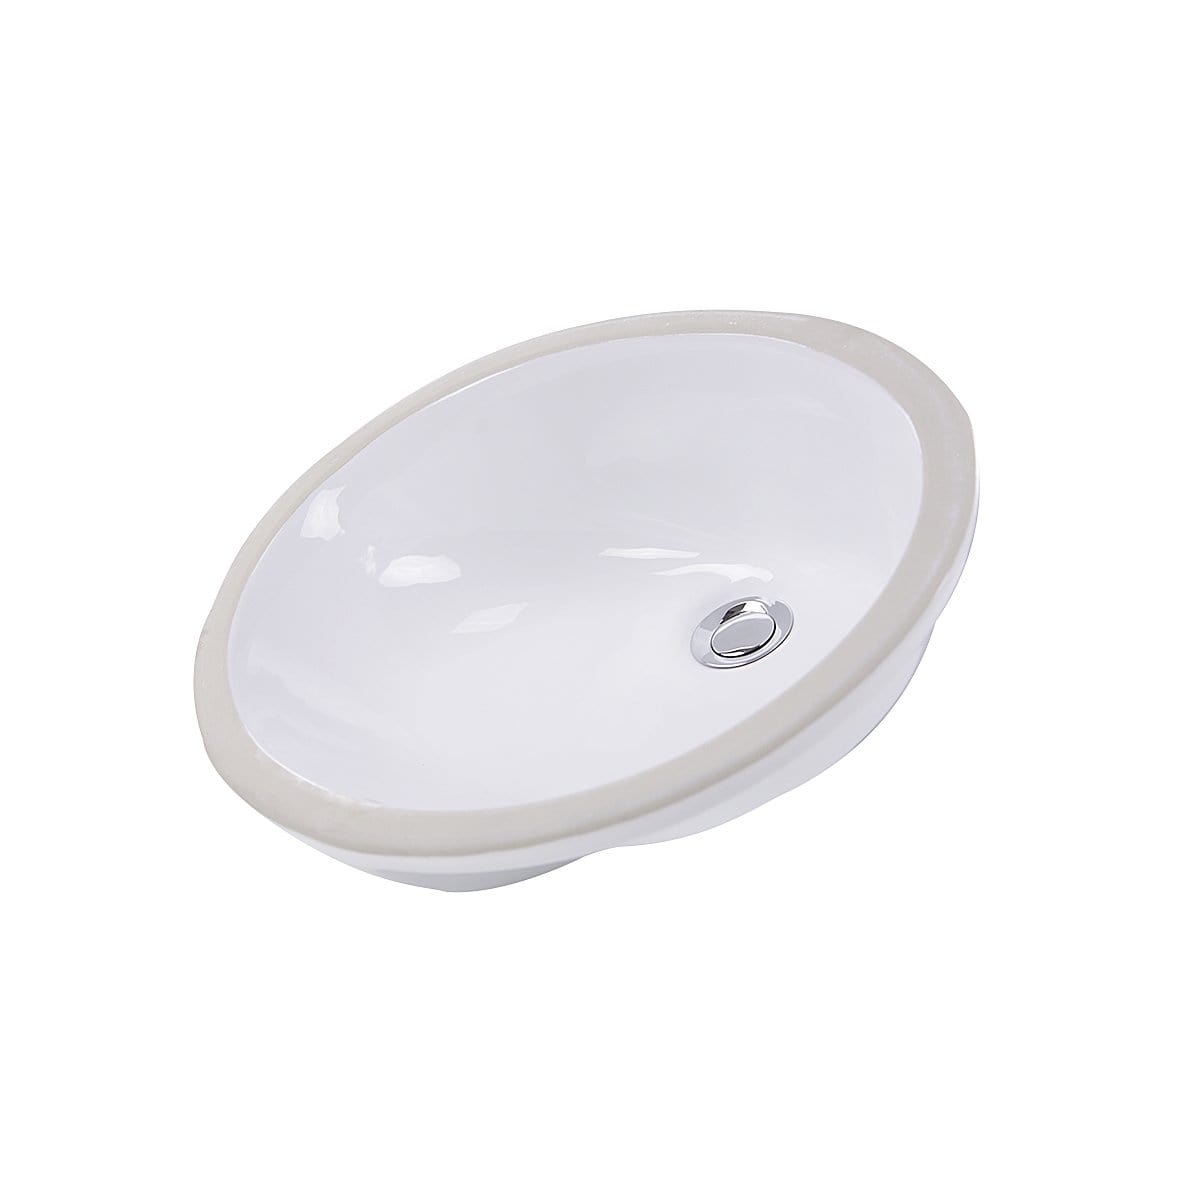 Nantucket Glazed Bottom Undermount Oval Ceramic Sink In White - GB-17x14-W